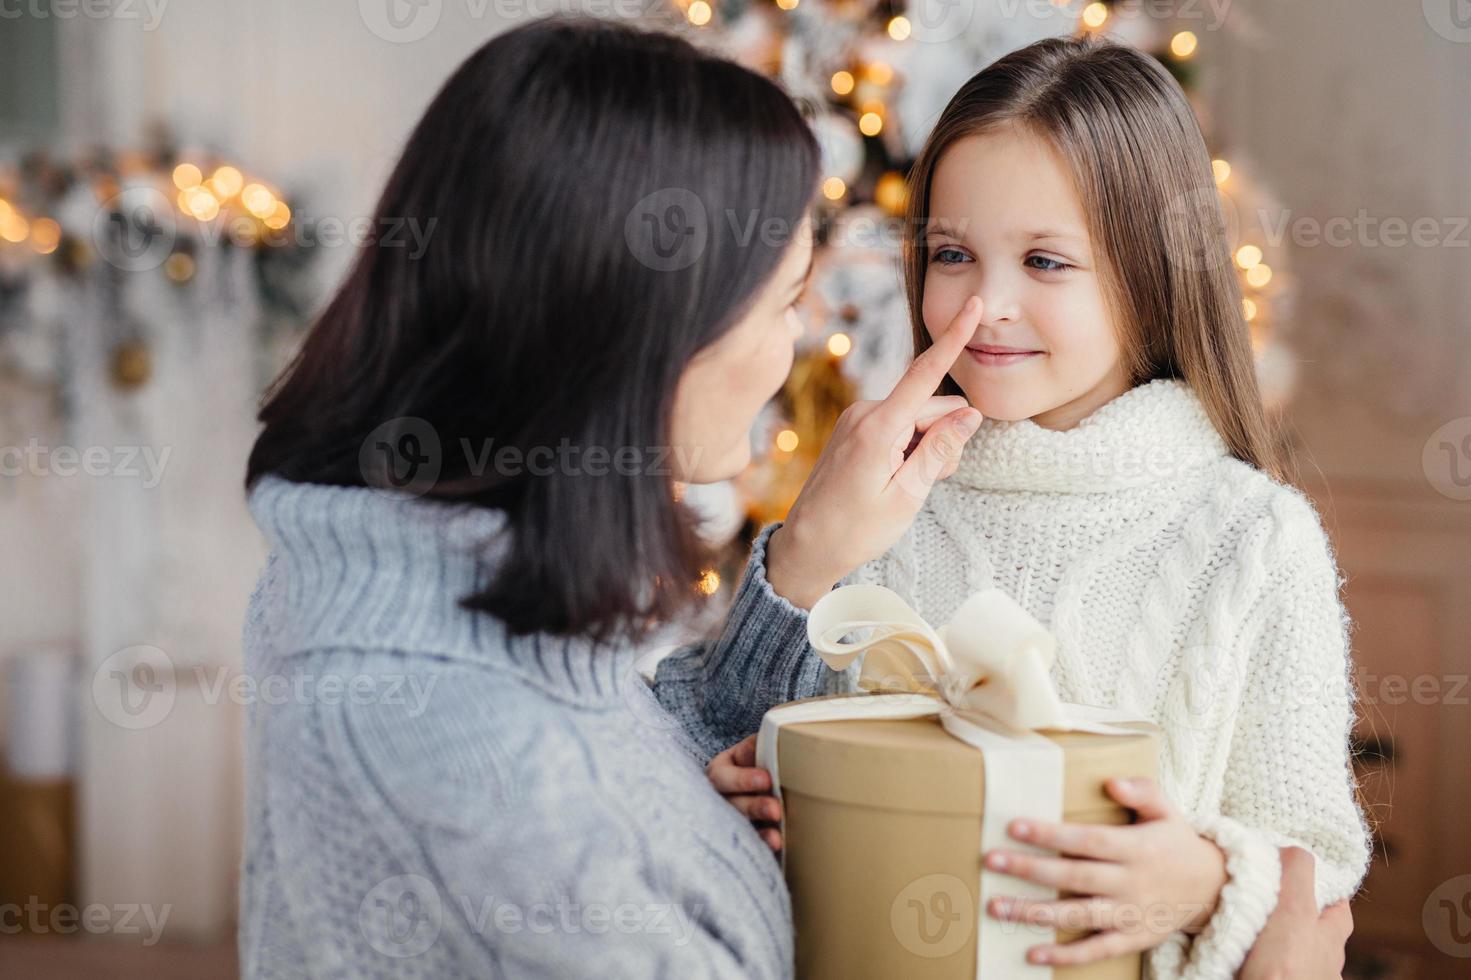 aanhankelijke moeder geeft cadeau aan haar schattige dochtertje, bereidt verrassing voor op Kerstmis, raakt haar neus aan, drukt grote liefde uit. familie, feest, cadeautjes, wonder, wintervakantie concept foto